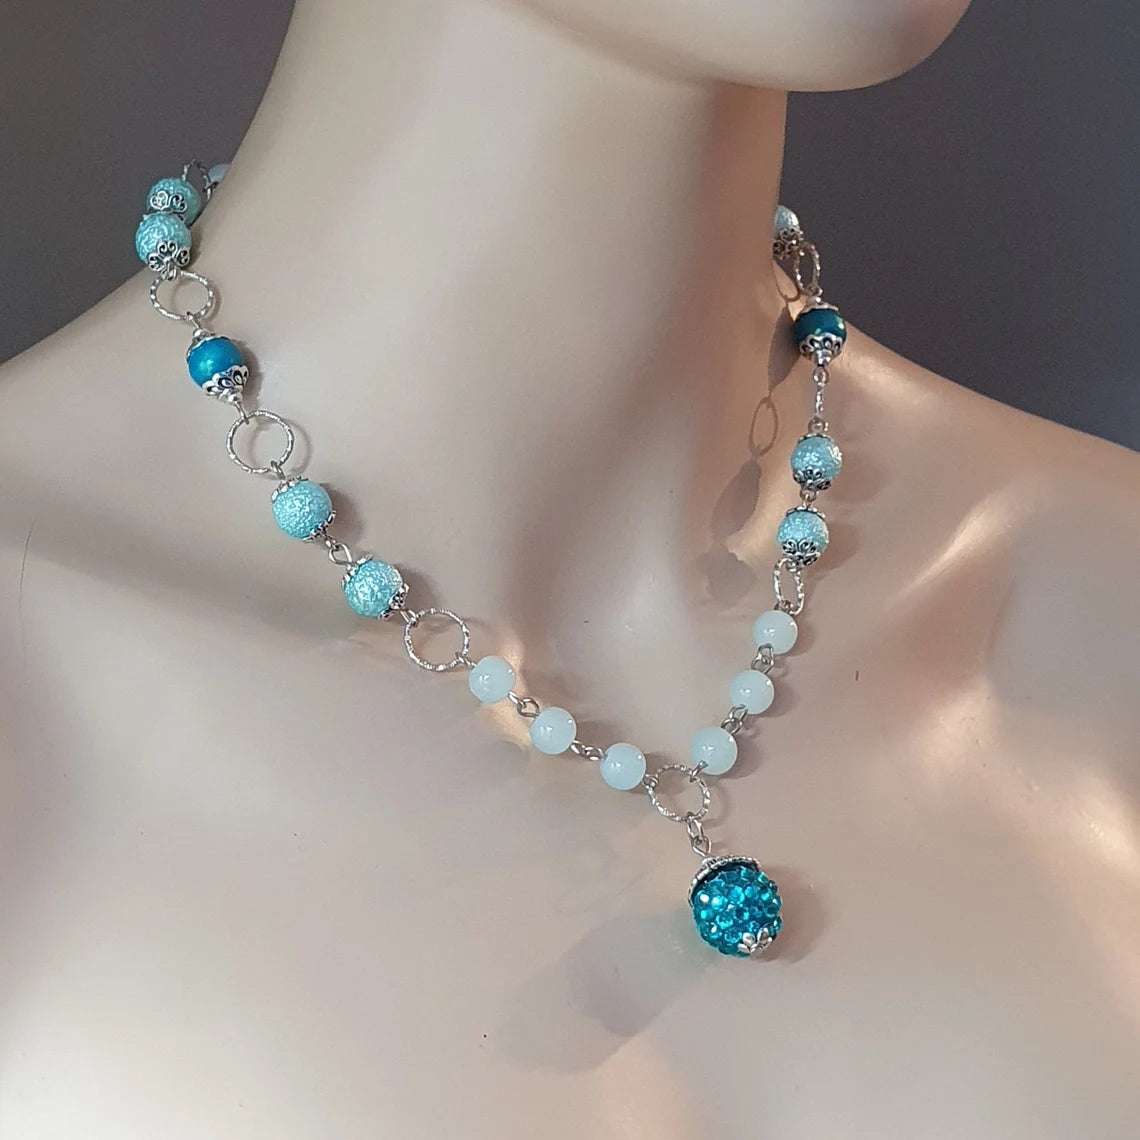 Handgefertigte Halskette mit Shamballa Bead in, Wasserblau, sowie farblich passende Glasperlen, Unikat